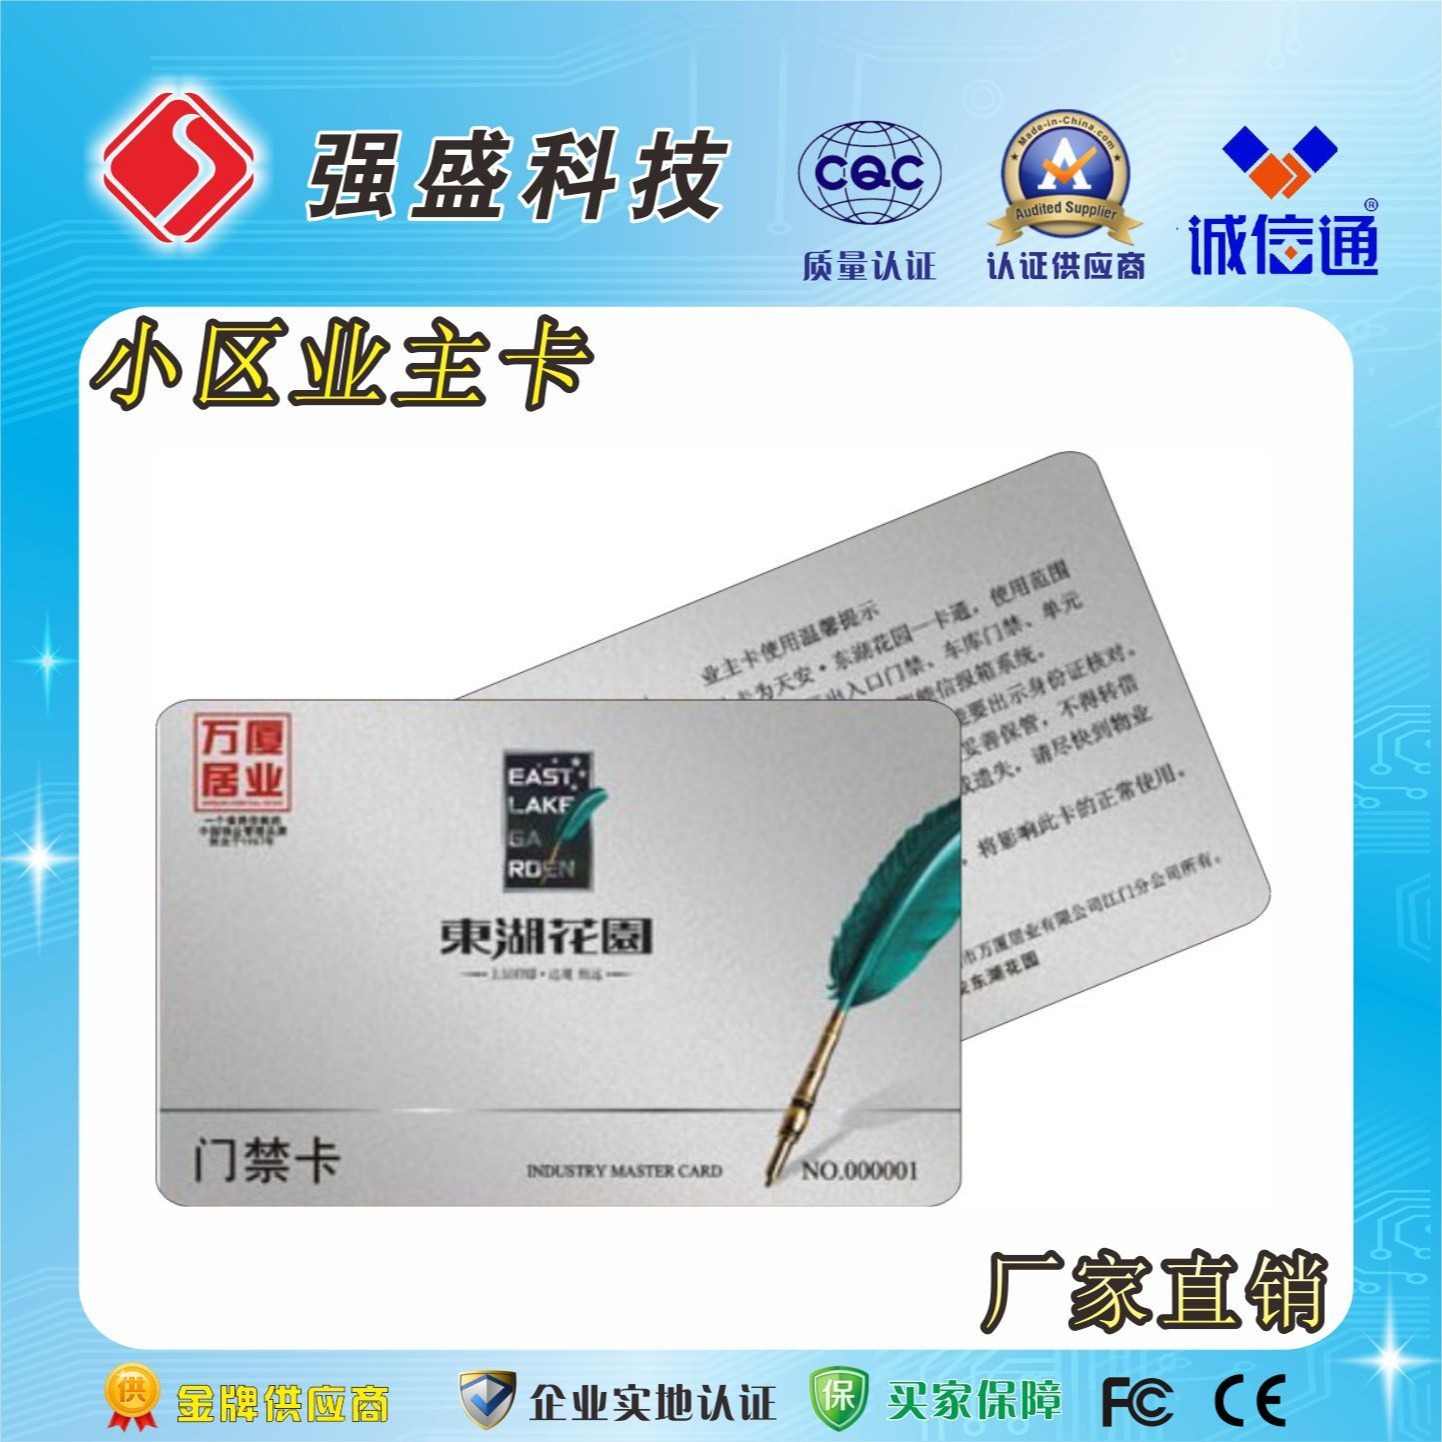 广州越秀地产IC住户卡制作厂家、IC停车卡制作成本、业主IC卡制作周期图片